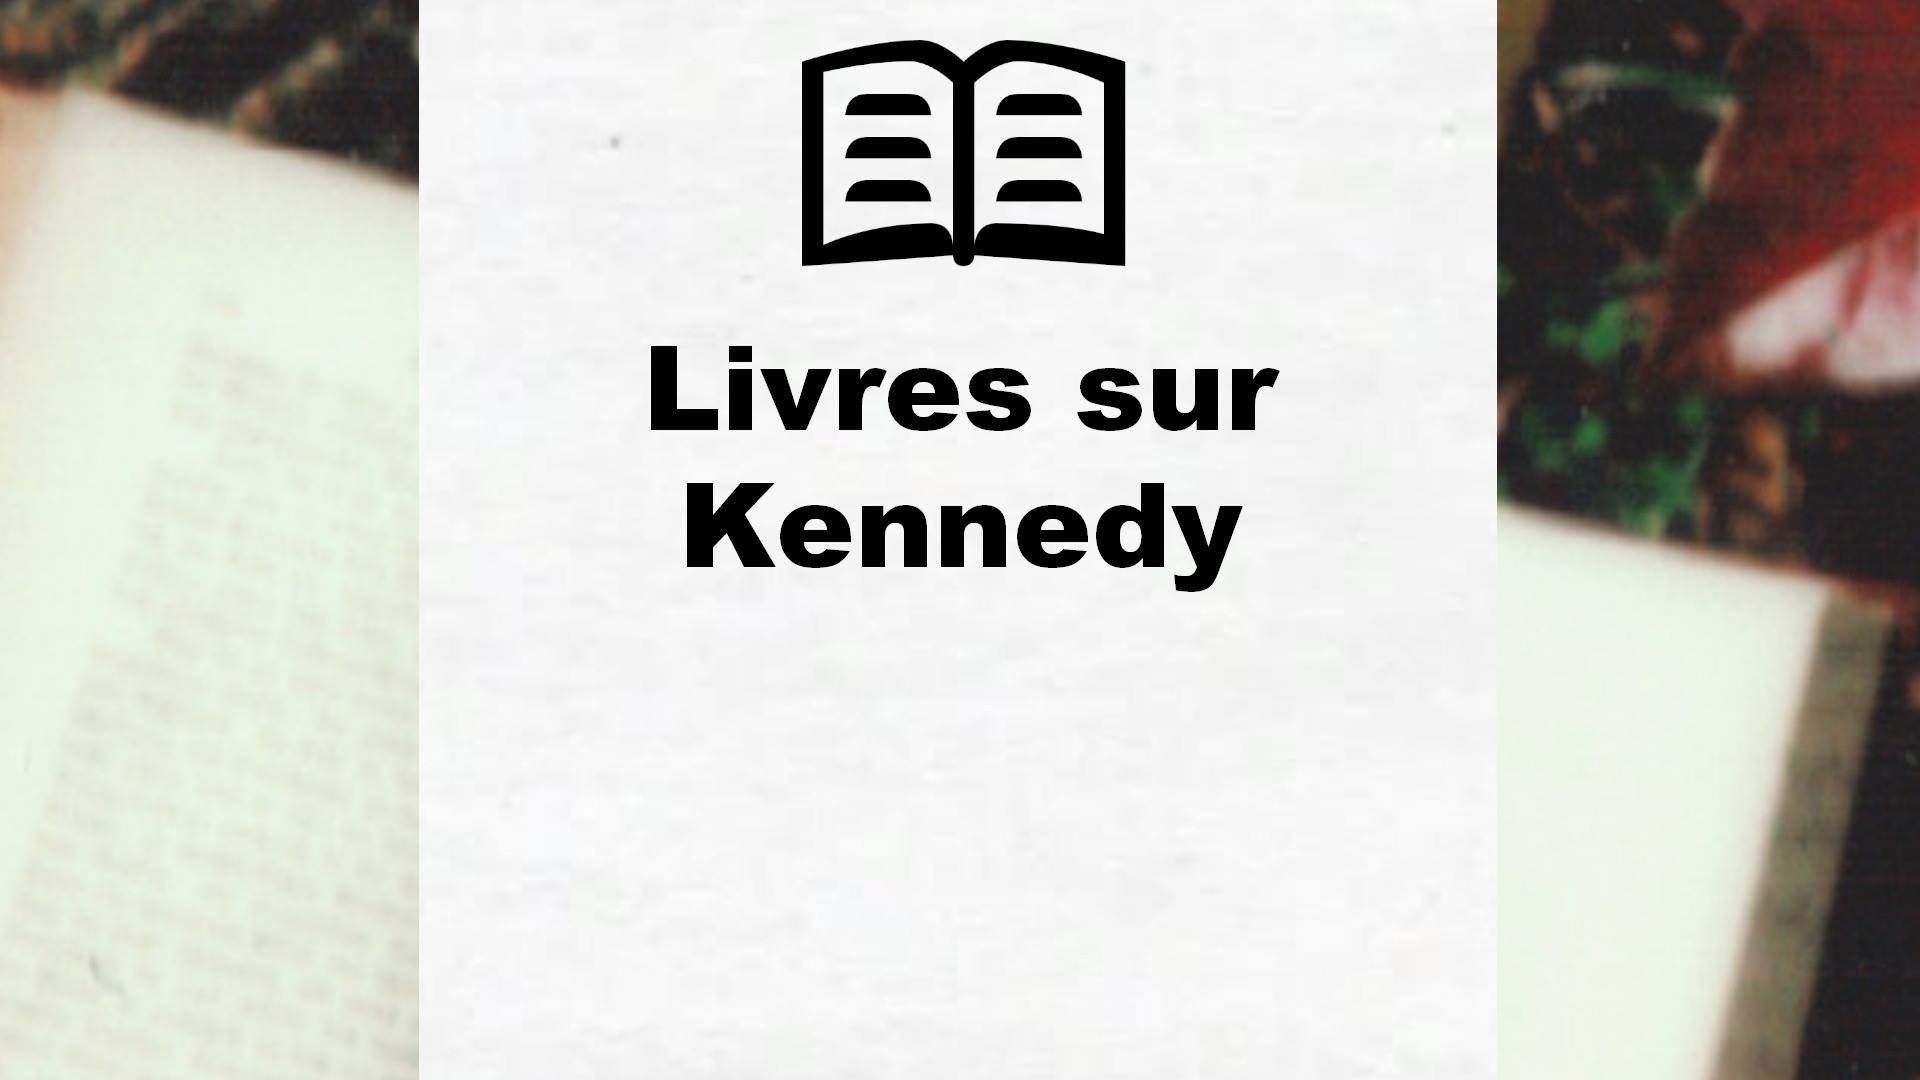 Livres sur Kennedy